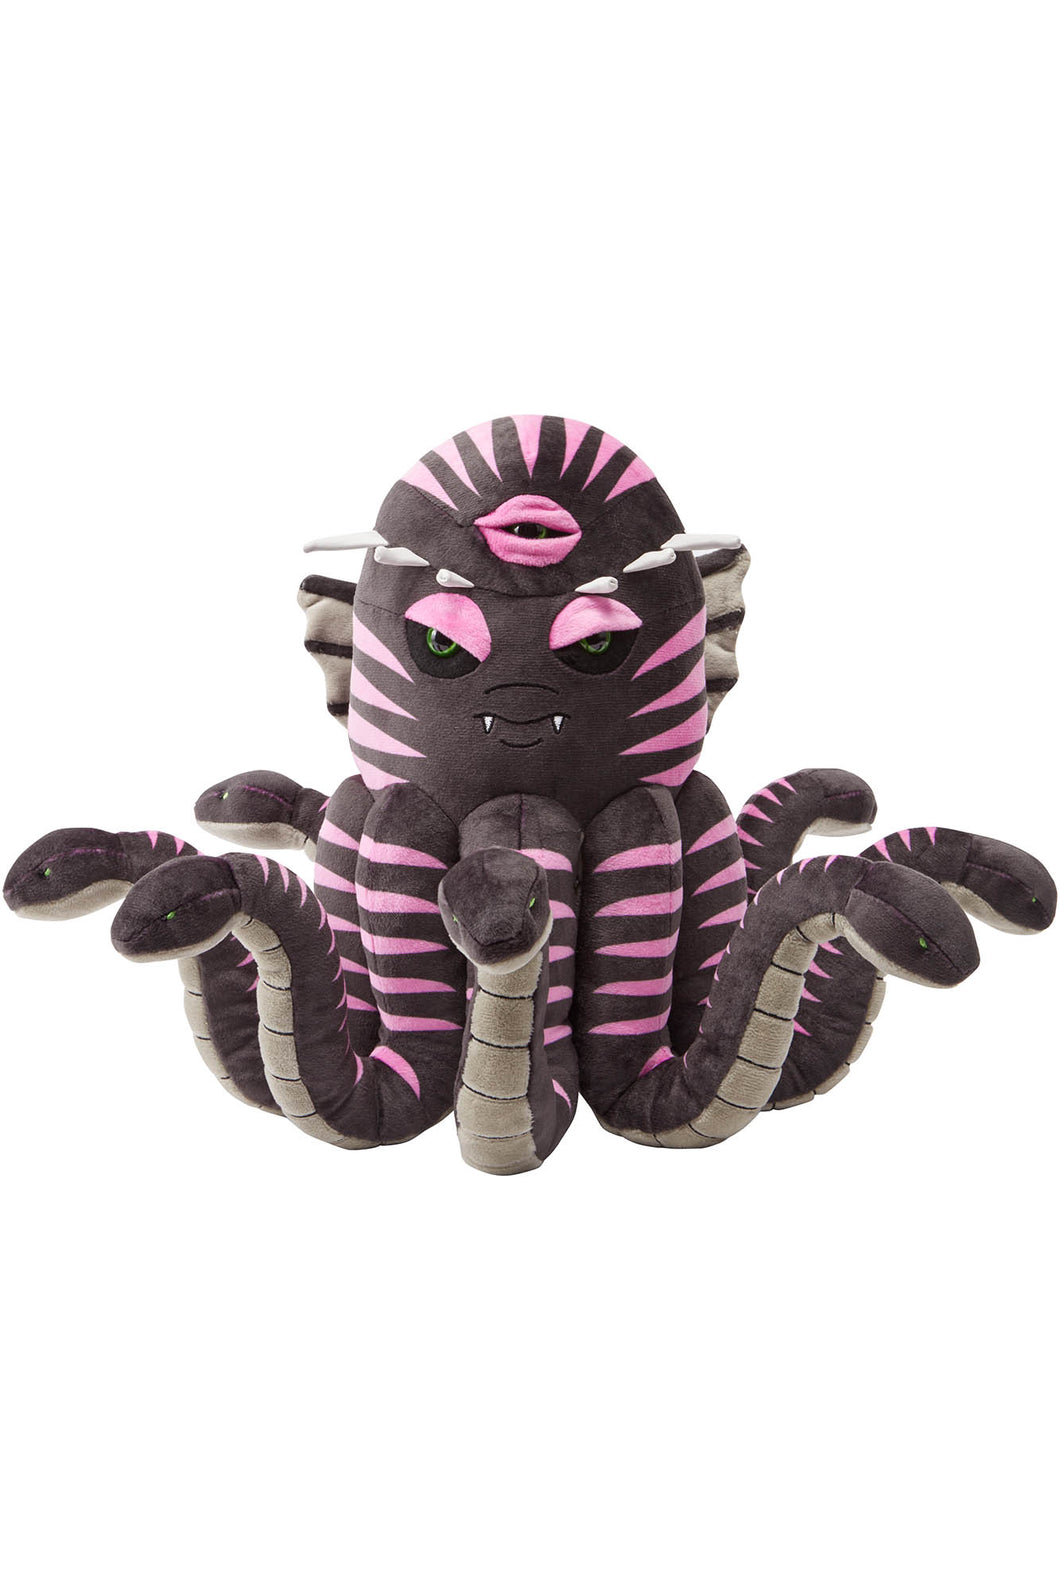 KILLSTAR KREEPTURE Plush Toy Kraken stuffed animal